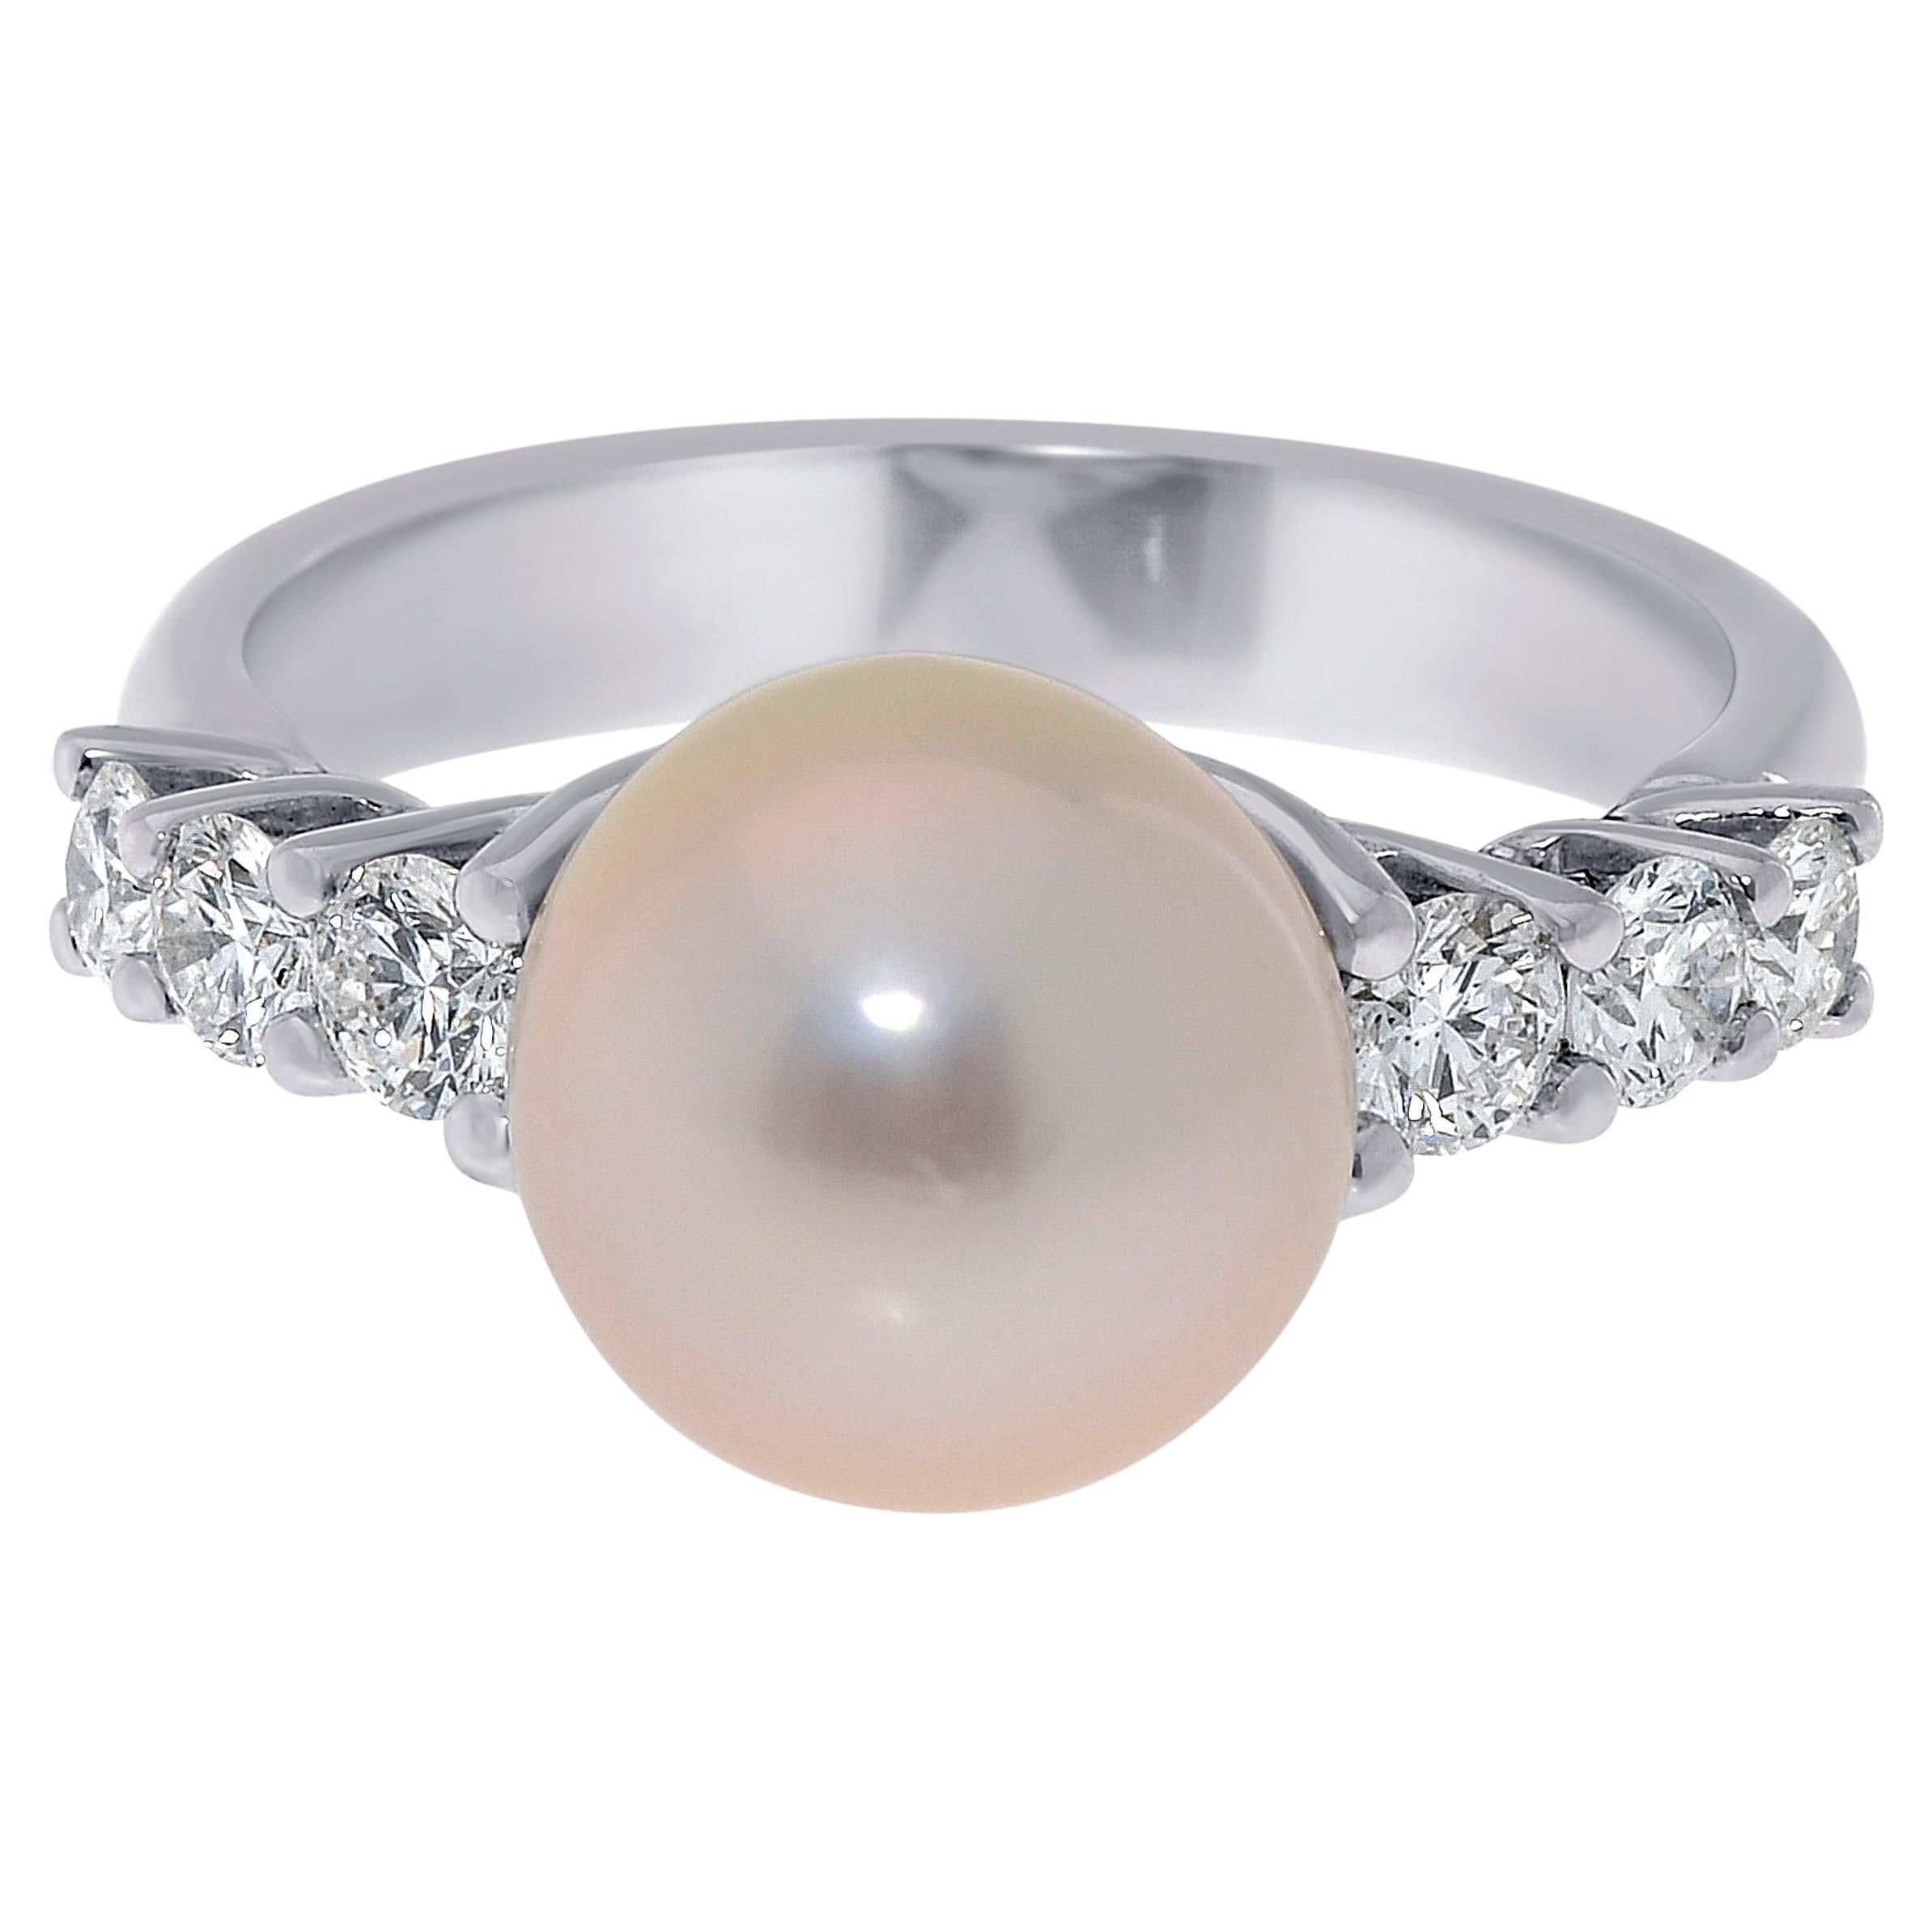 Zydo 18K White Gold, White Diamond & Pearl Band Ring sz. 6.5 For Sale